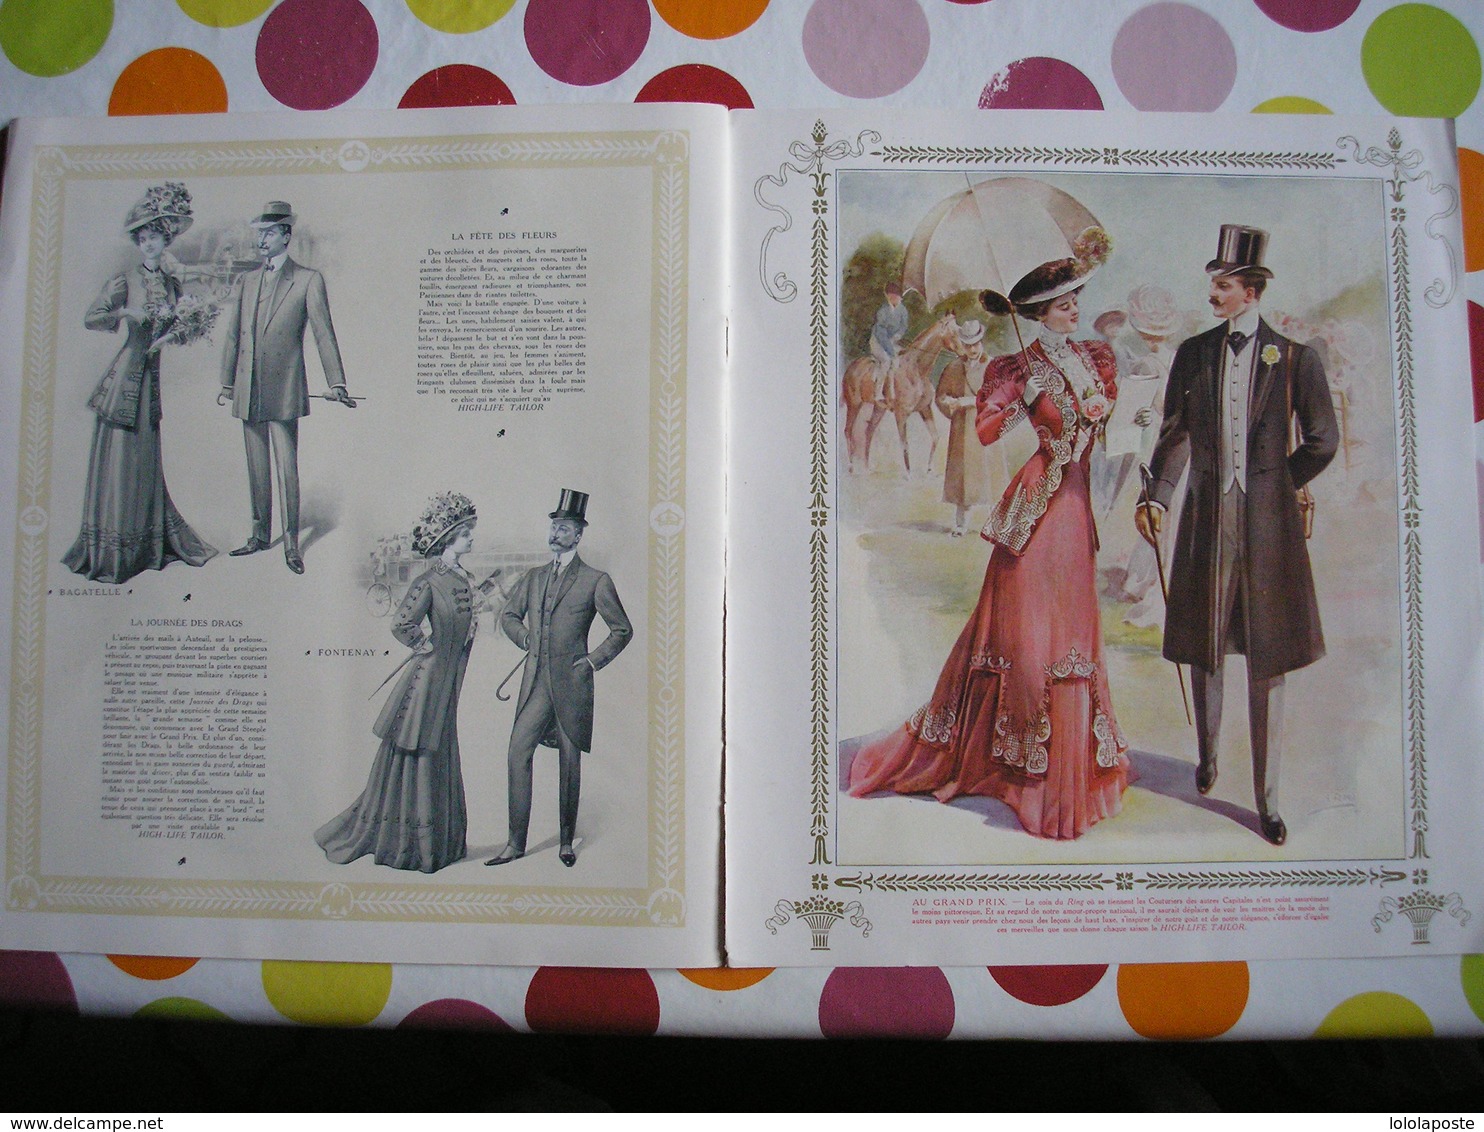 MODE AUTREFOIS  High Life Taylor : " SOUS L'EMPIRE " superbes illustrations couleurs impr. DRAEGER 1904